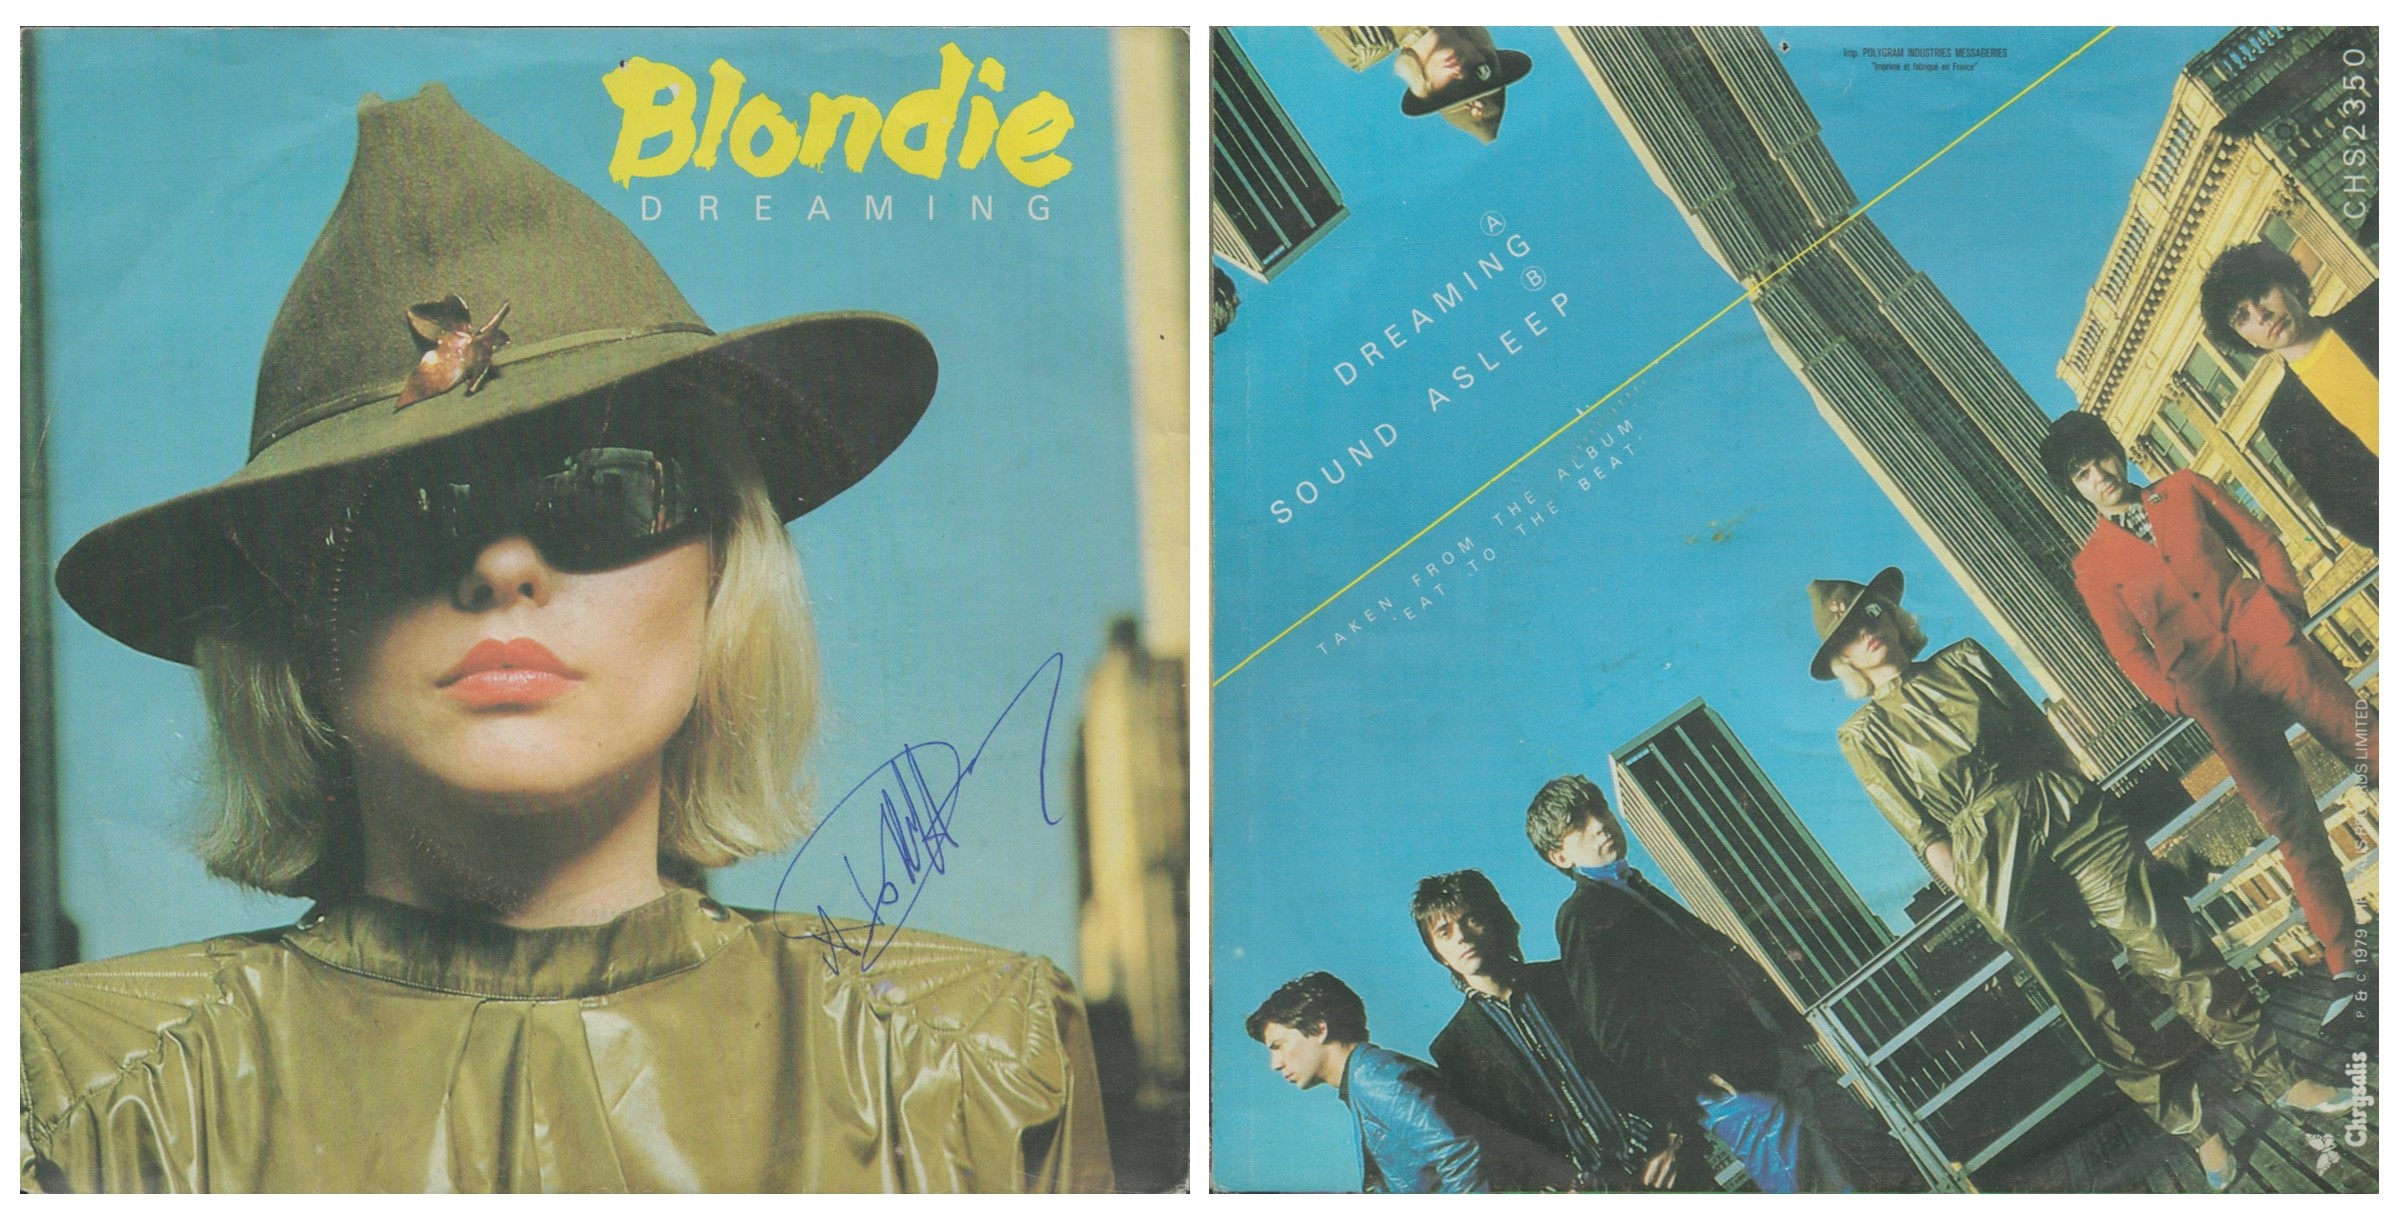 Debbie Harry - Blondie. Singer, songwriter and actress. A vinyl 7" single of Blondie - 'Dreaming' (